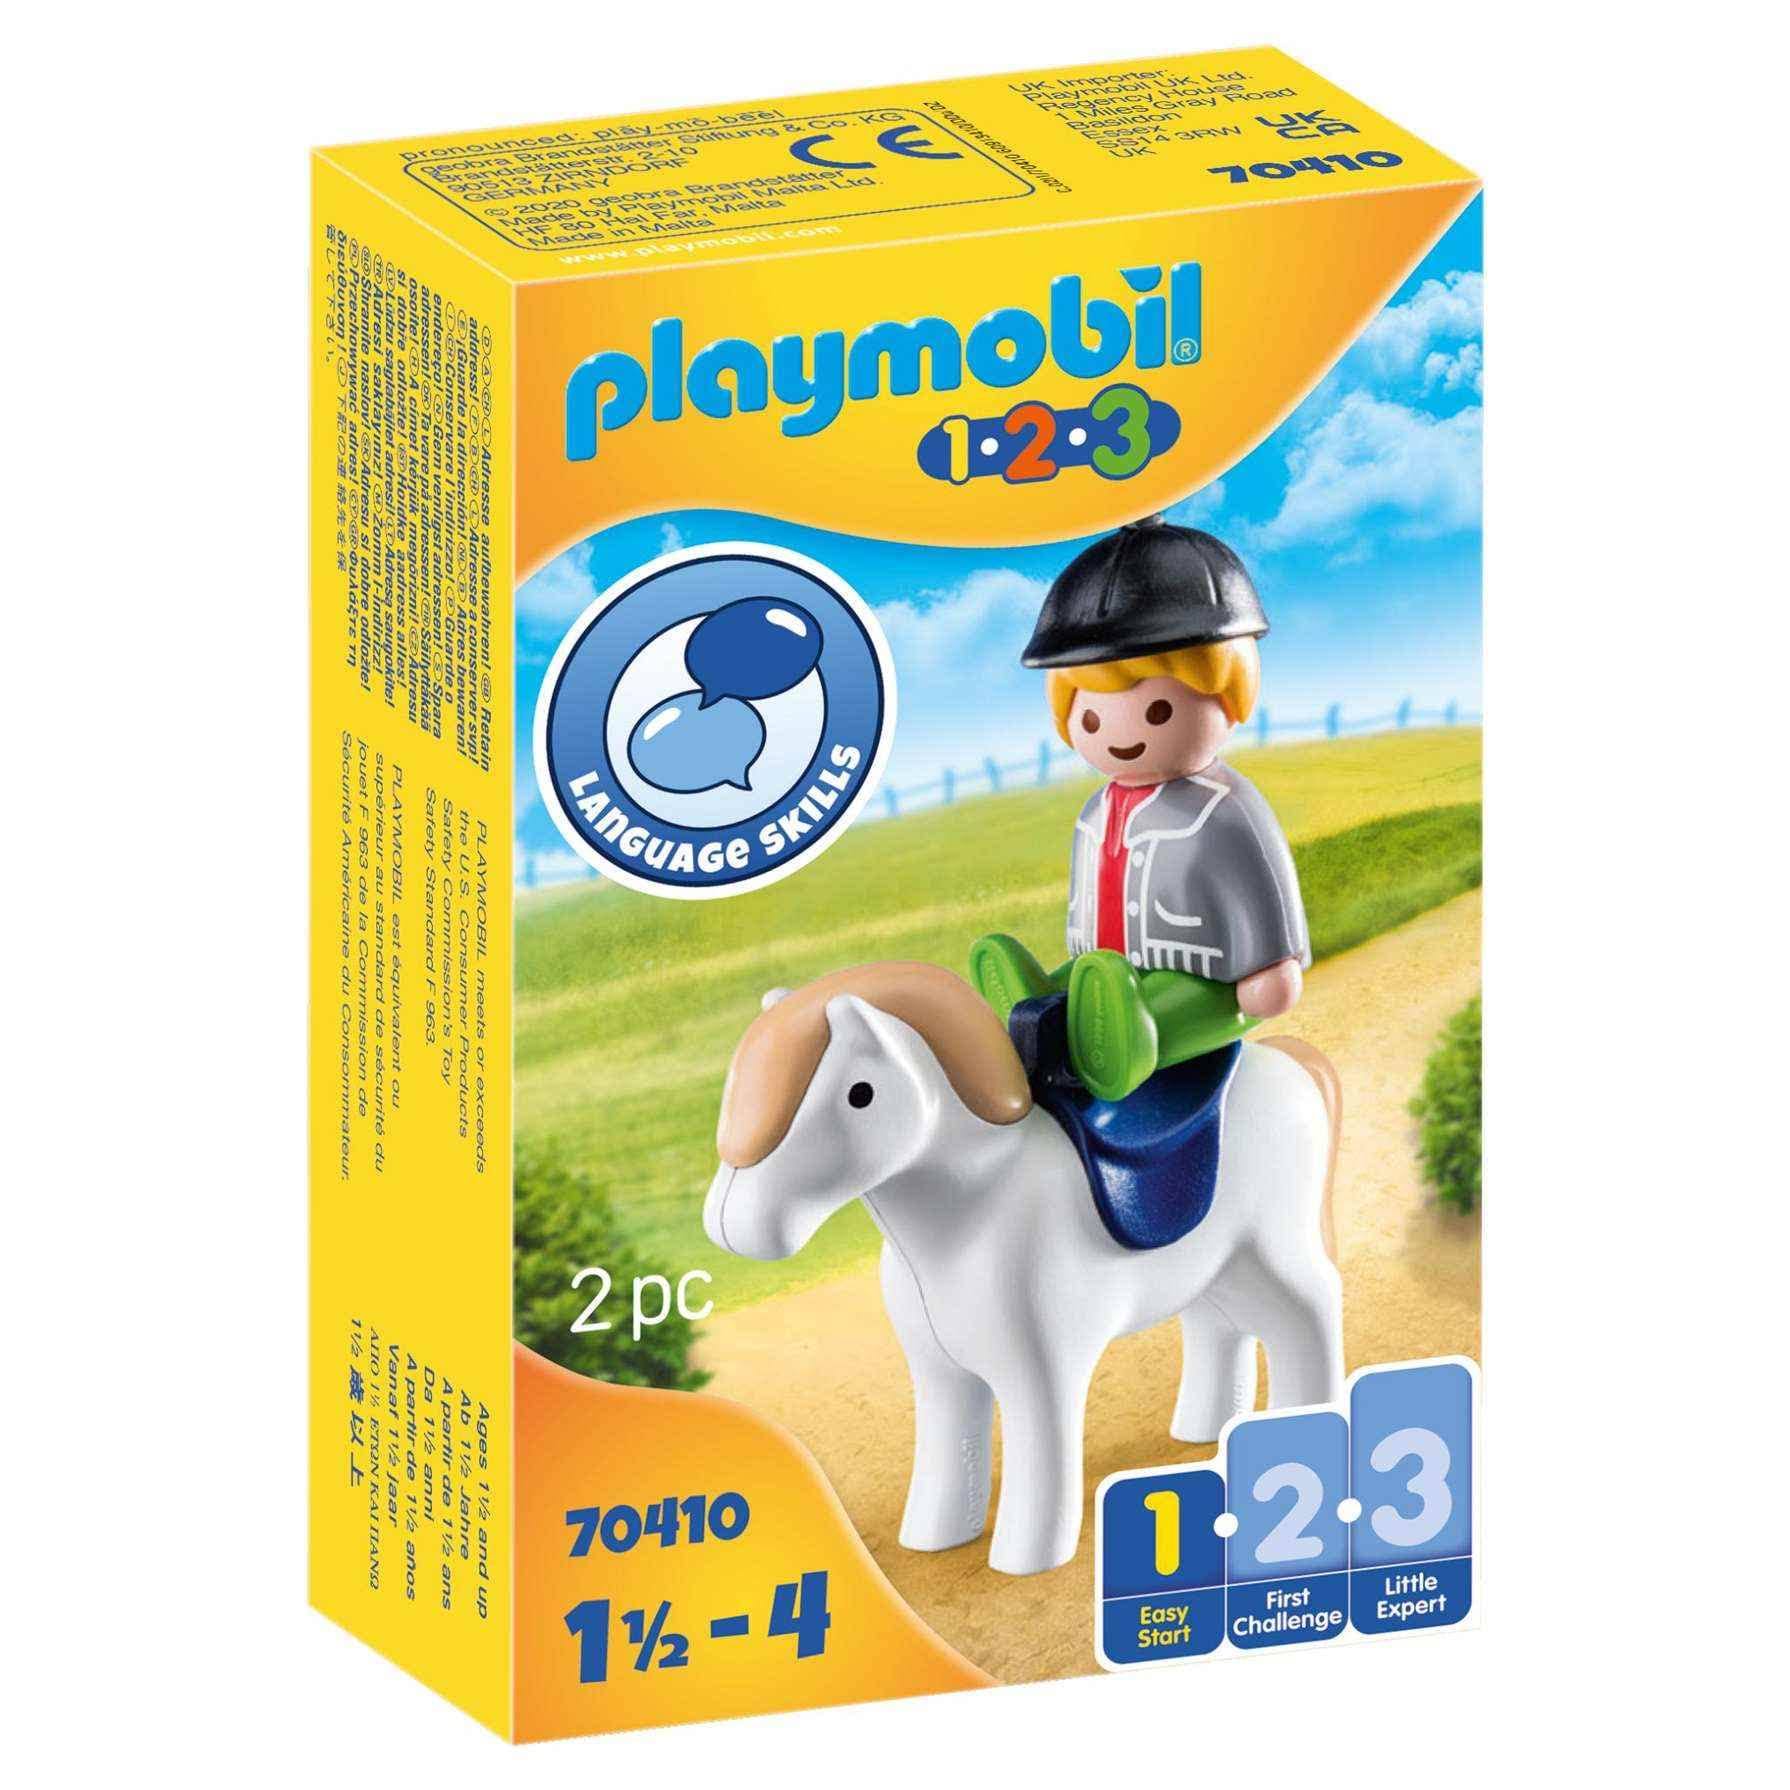 PLAYMOBIL 70410 - Boy with Pony